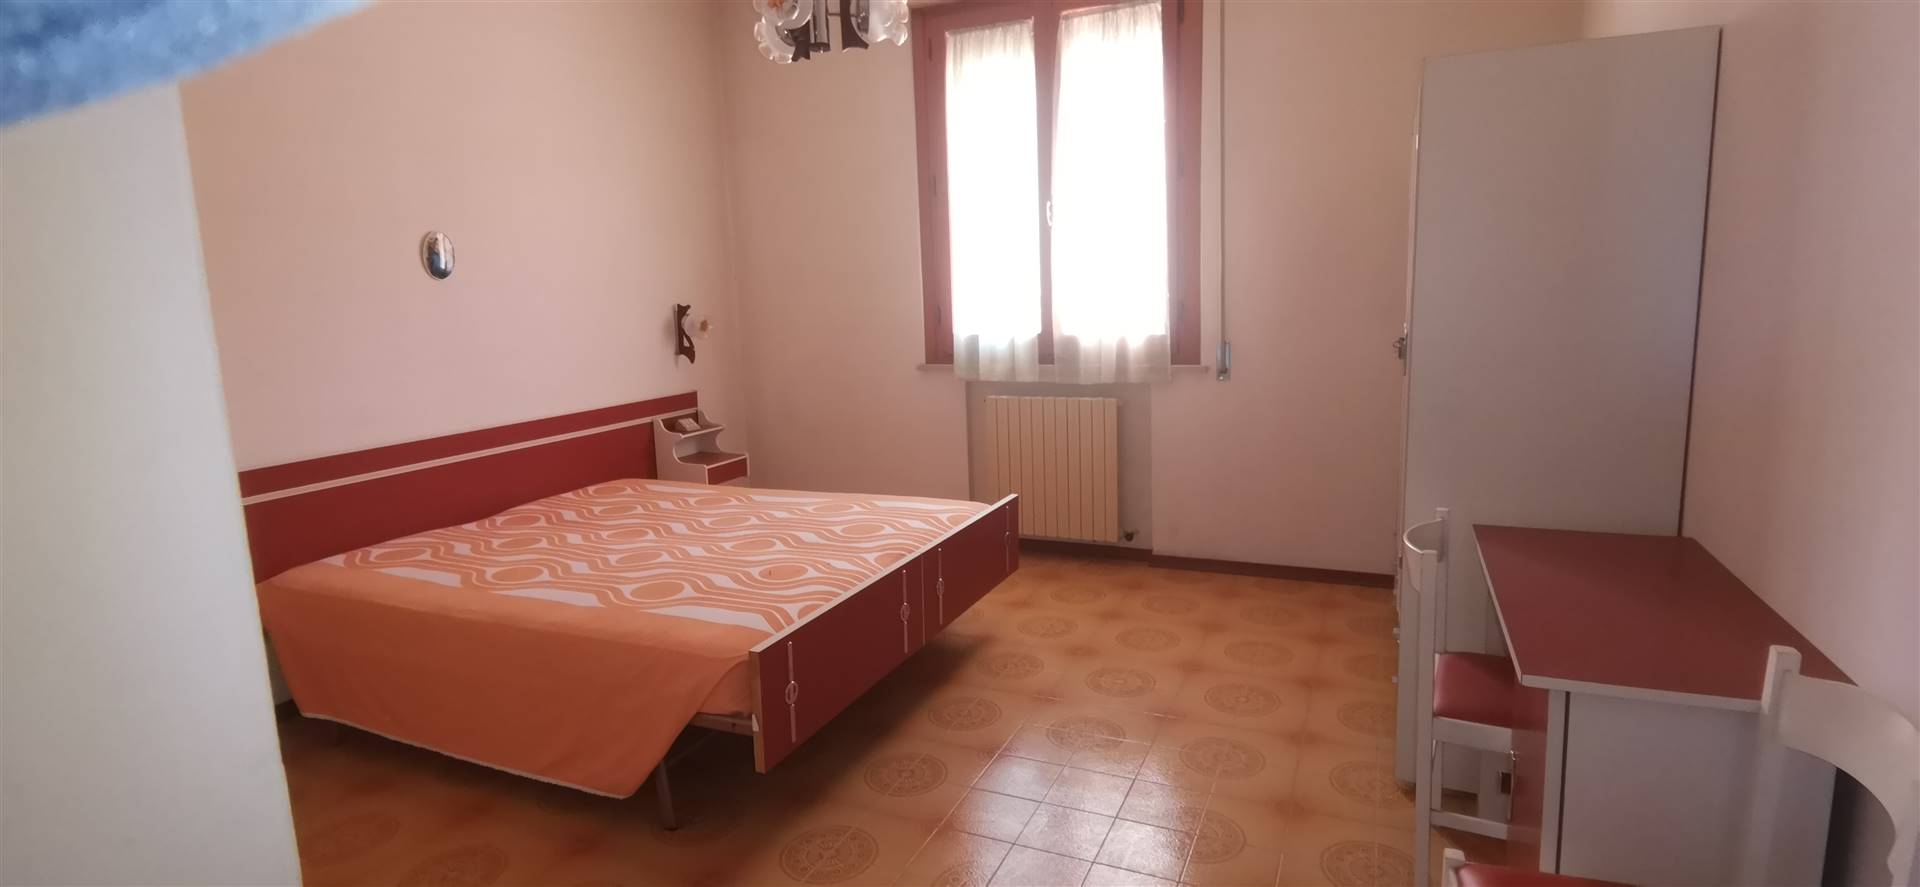 Appartamento in vendita a Chianciano Terme, 6 locali, prezzo € 95.000 | PortaleAgenzieImmobiliari.it